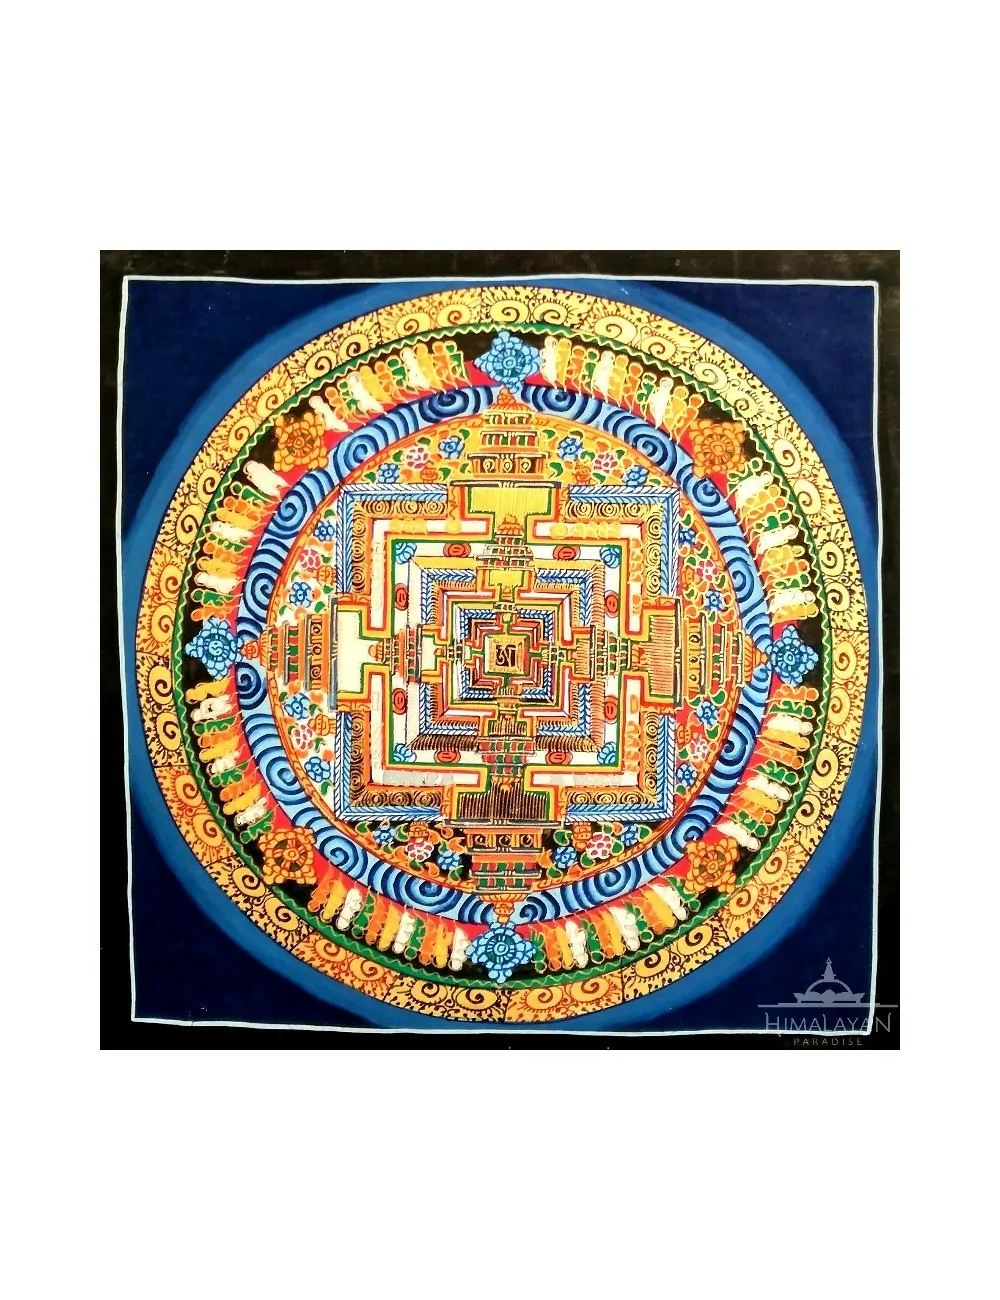 Mandala Tibetà de Kalachakra | Himalayan Paradise